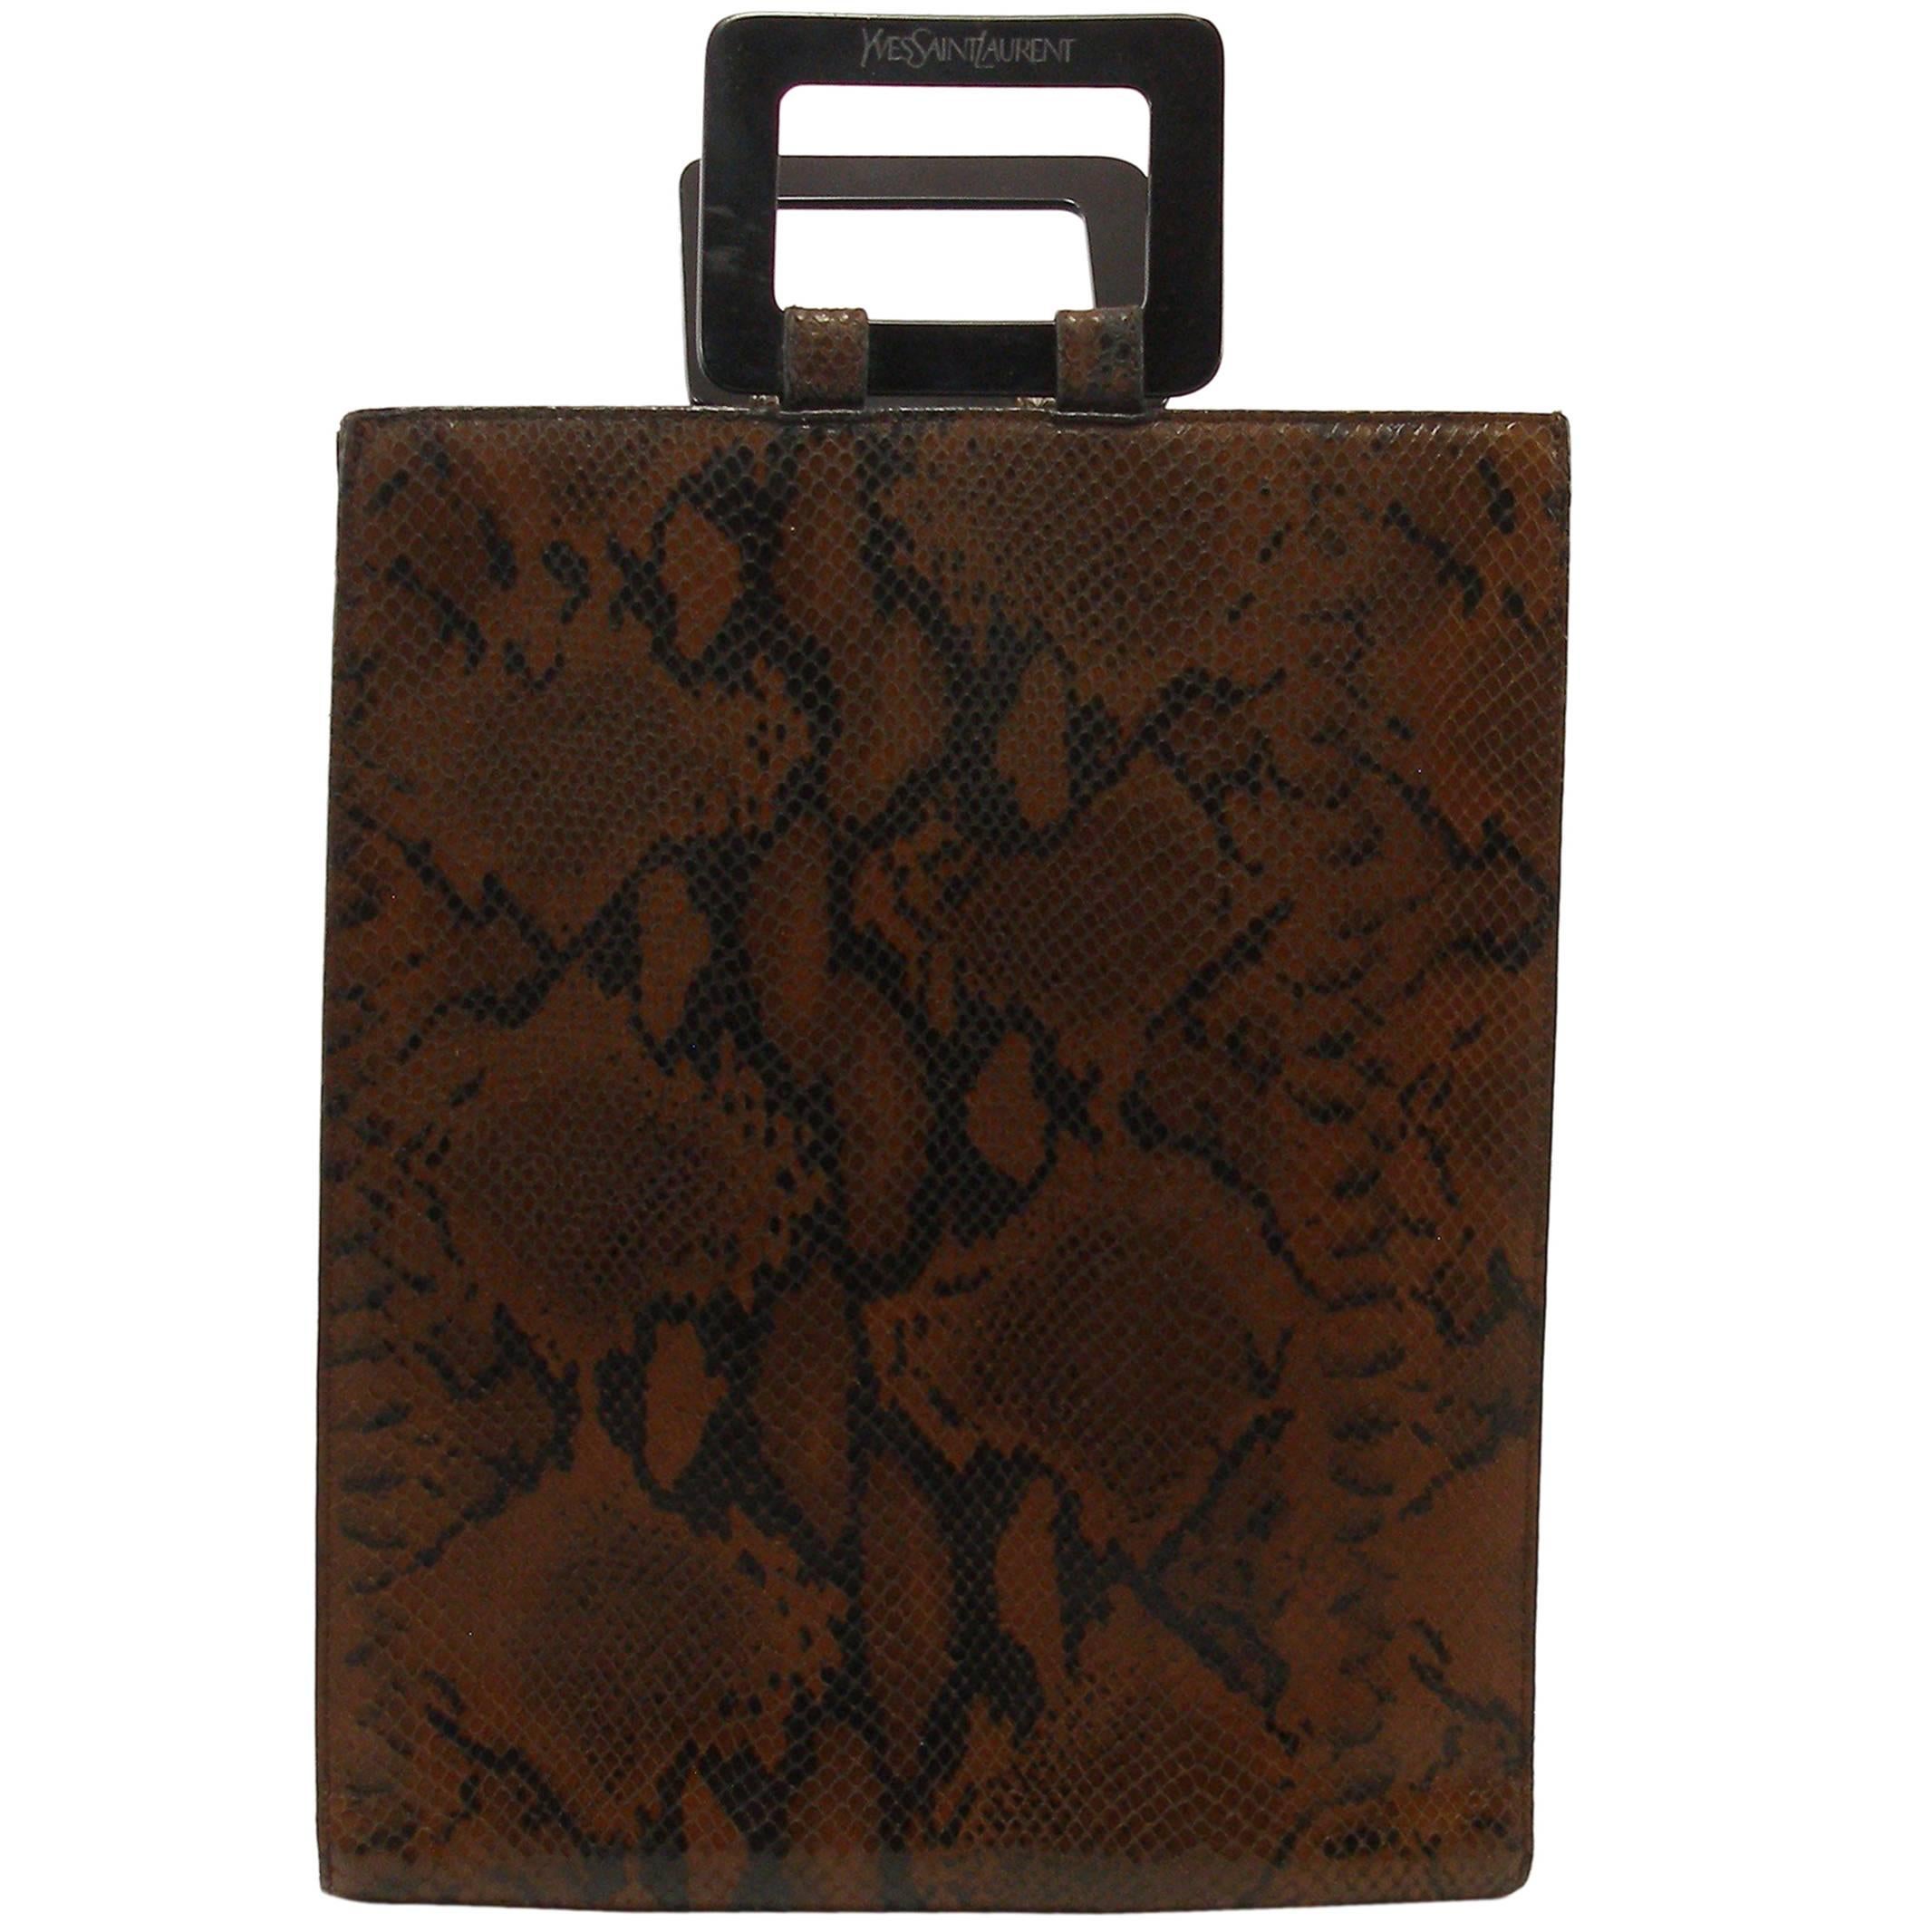 Yves Saint Laurent Ysl Vintage handbag in Python Leather  For Sale